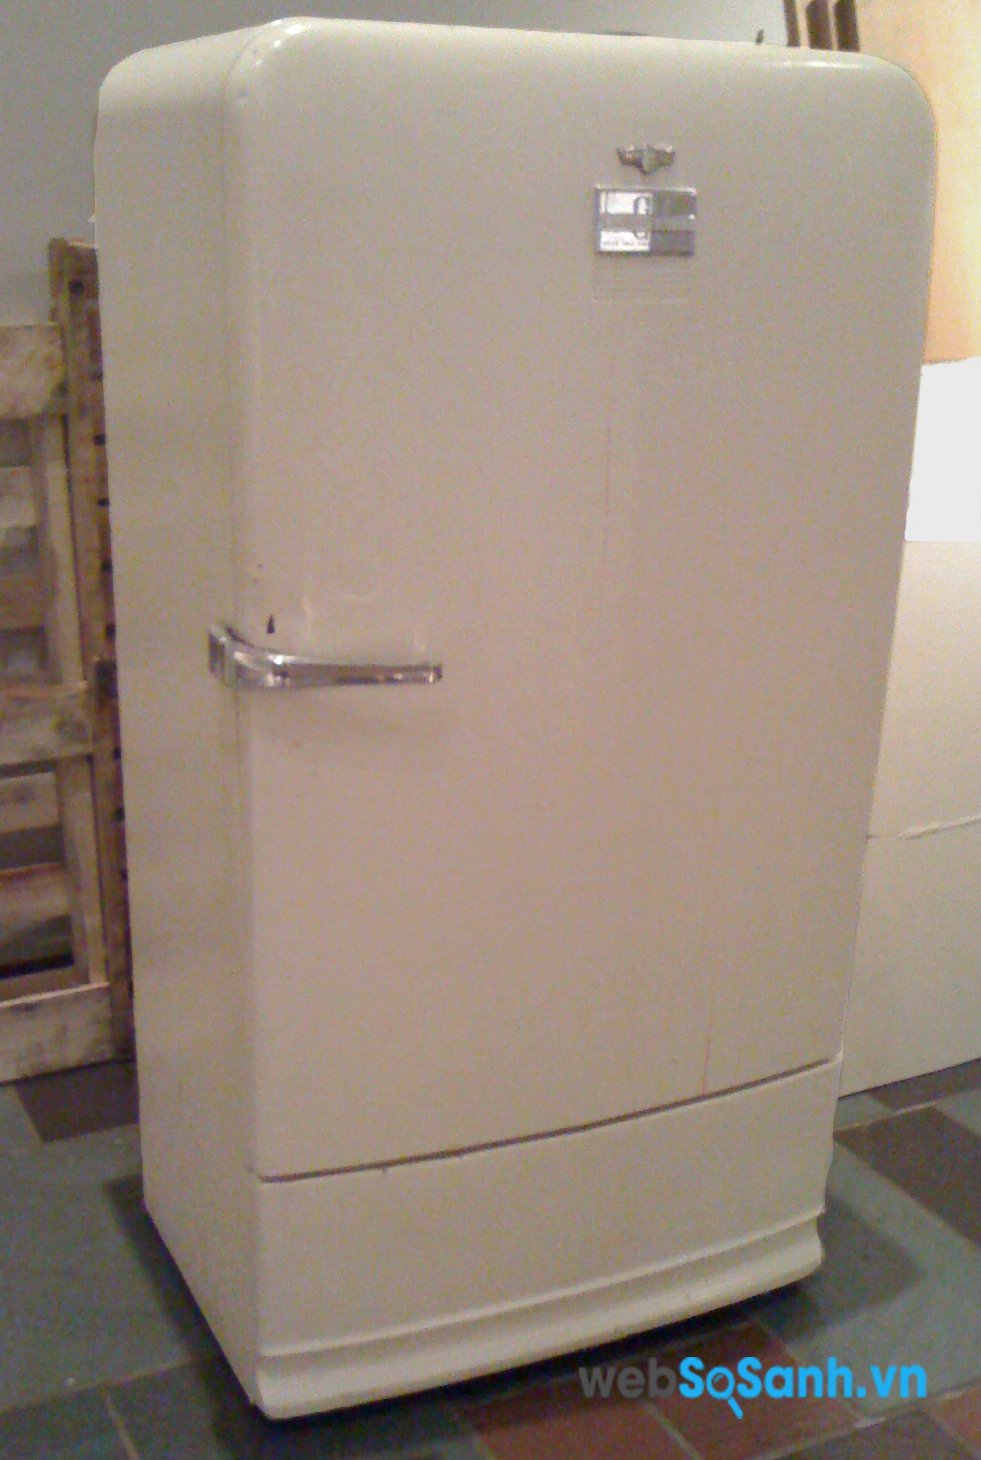 Mua tủ lạnh cũ là một trong những giải pháp khá tốt